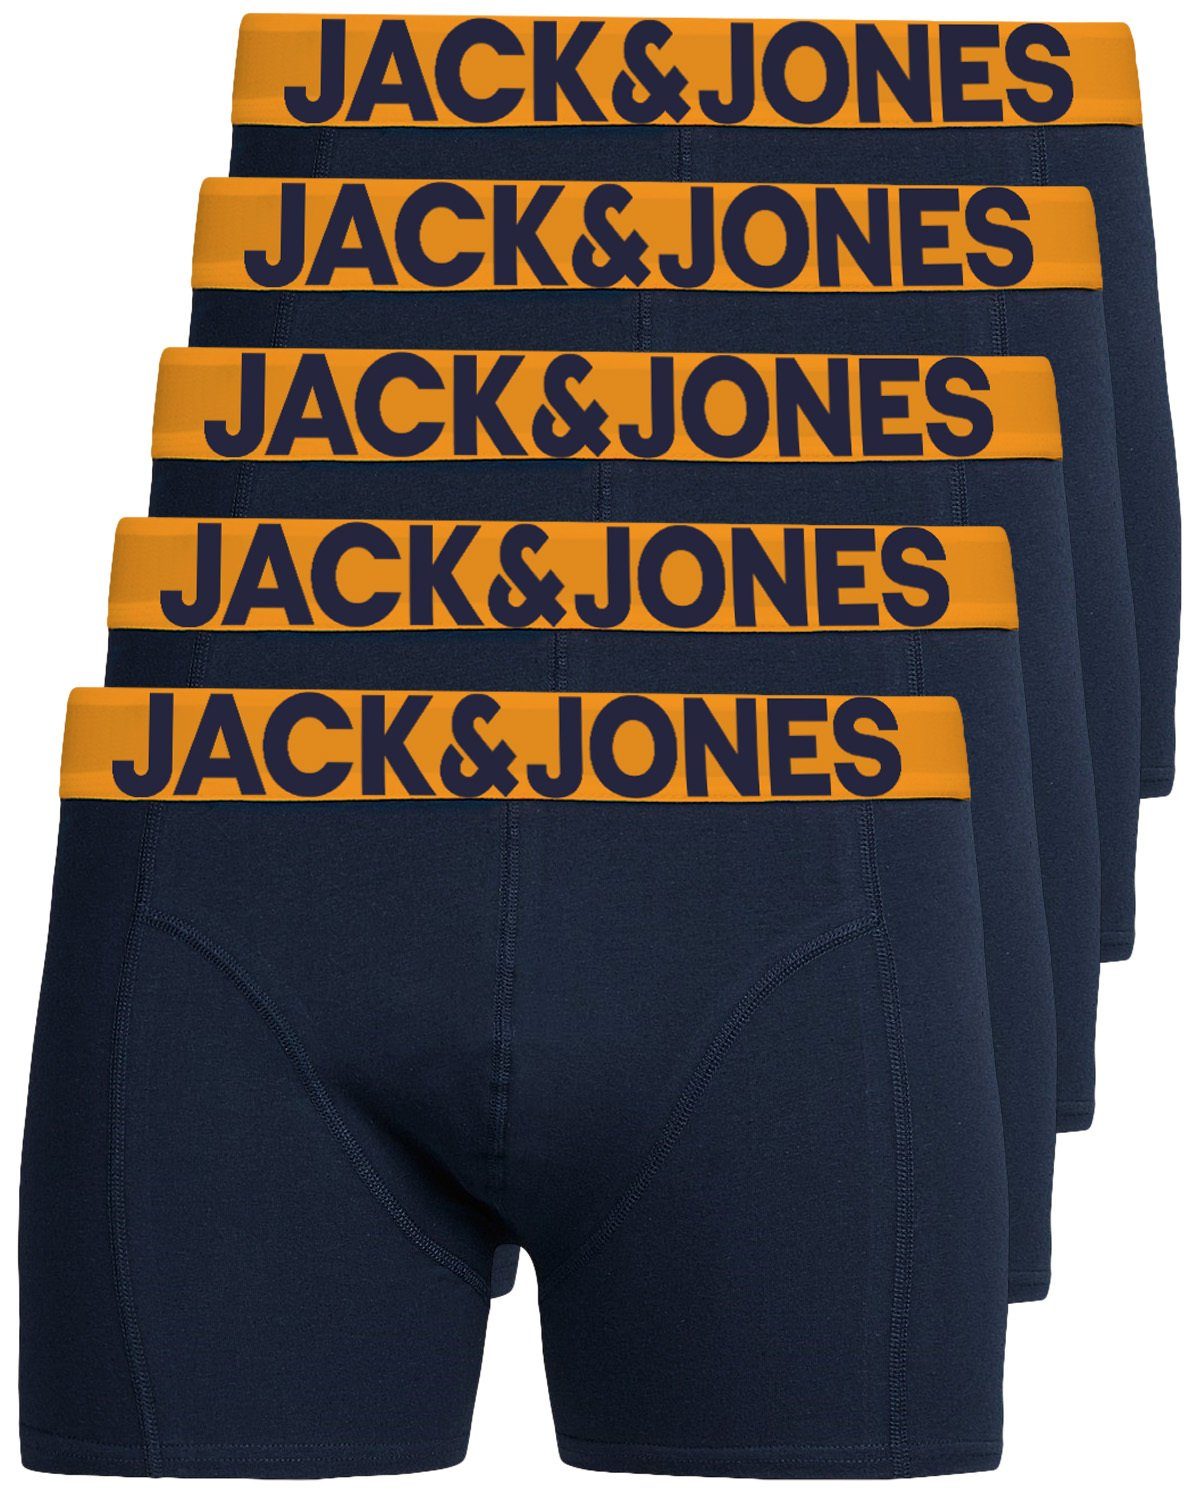 Jack & Jones Boxershorts Solid (5-St., 5er Pack) gute Passform durch elastische Baumwollqualität navy | Boxer anliegend